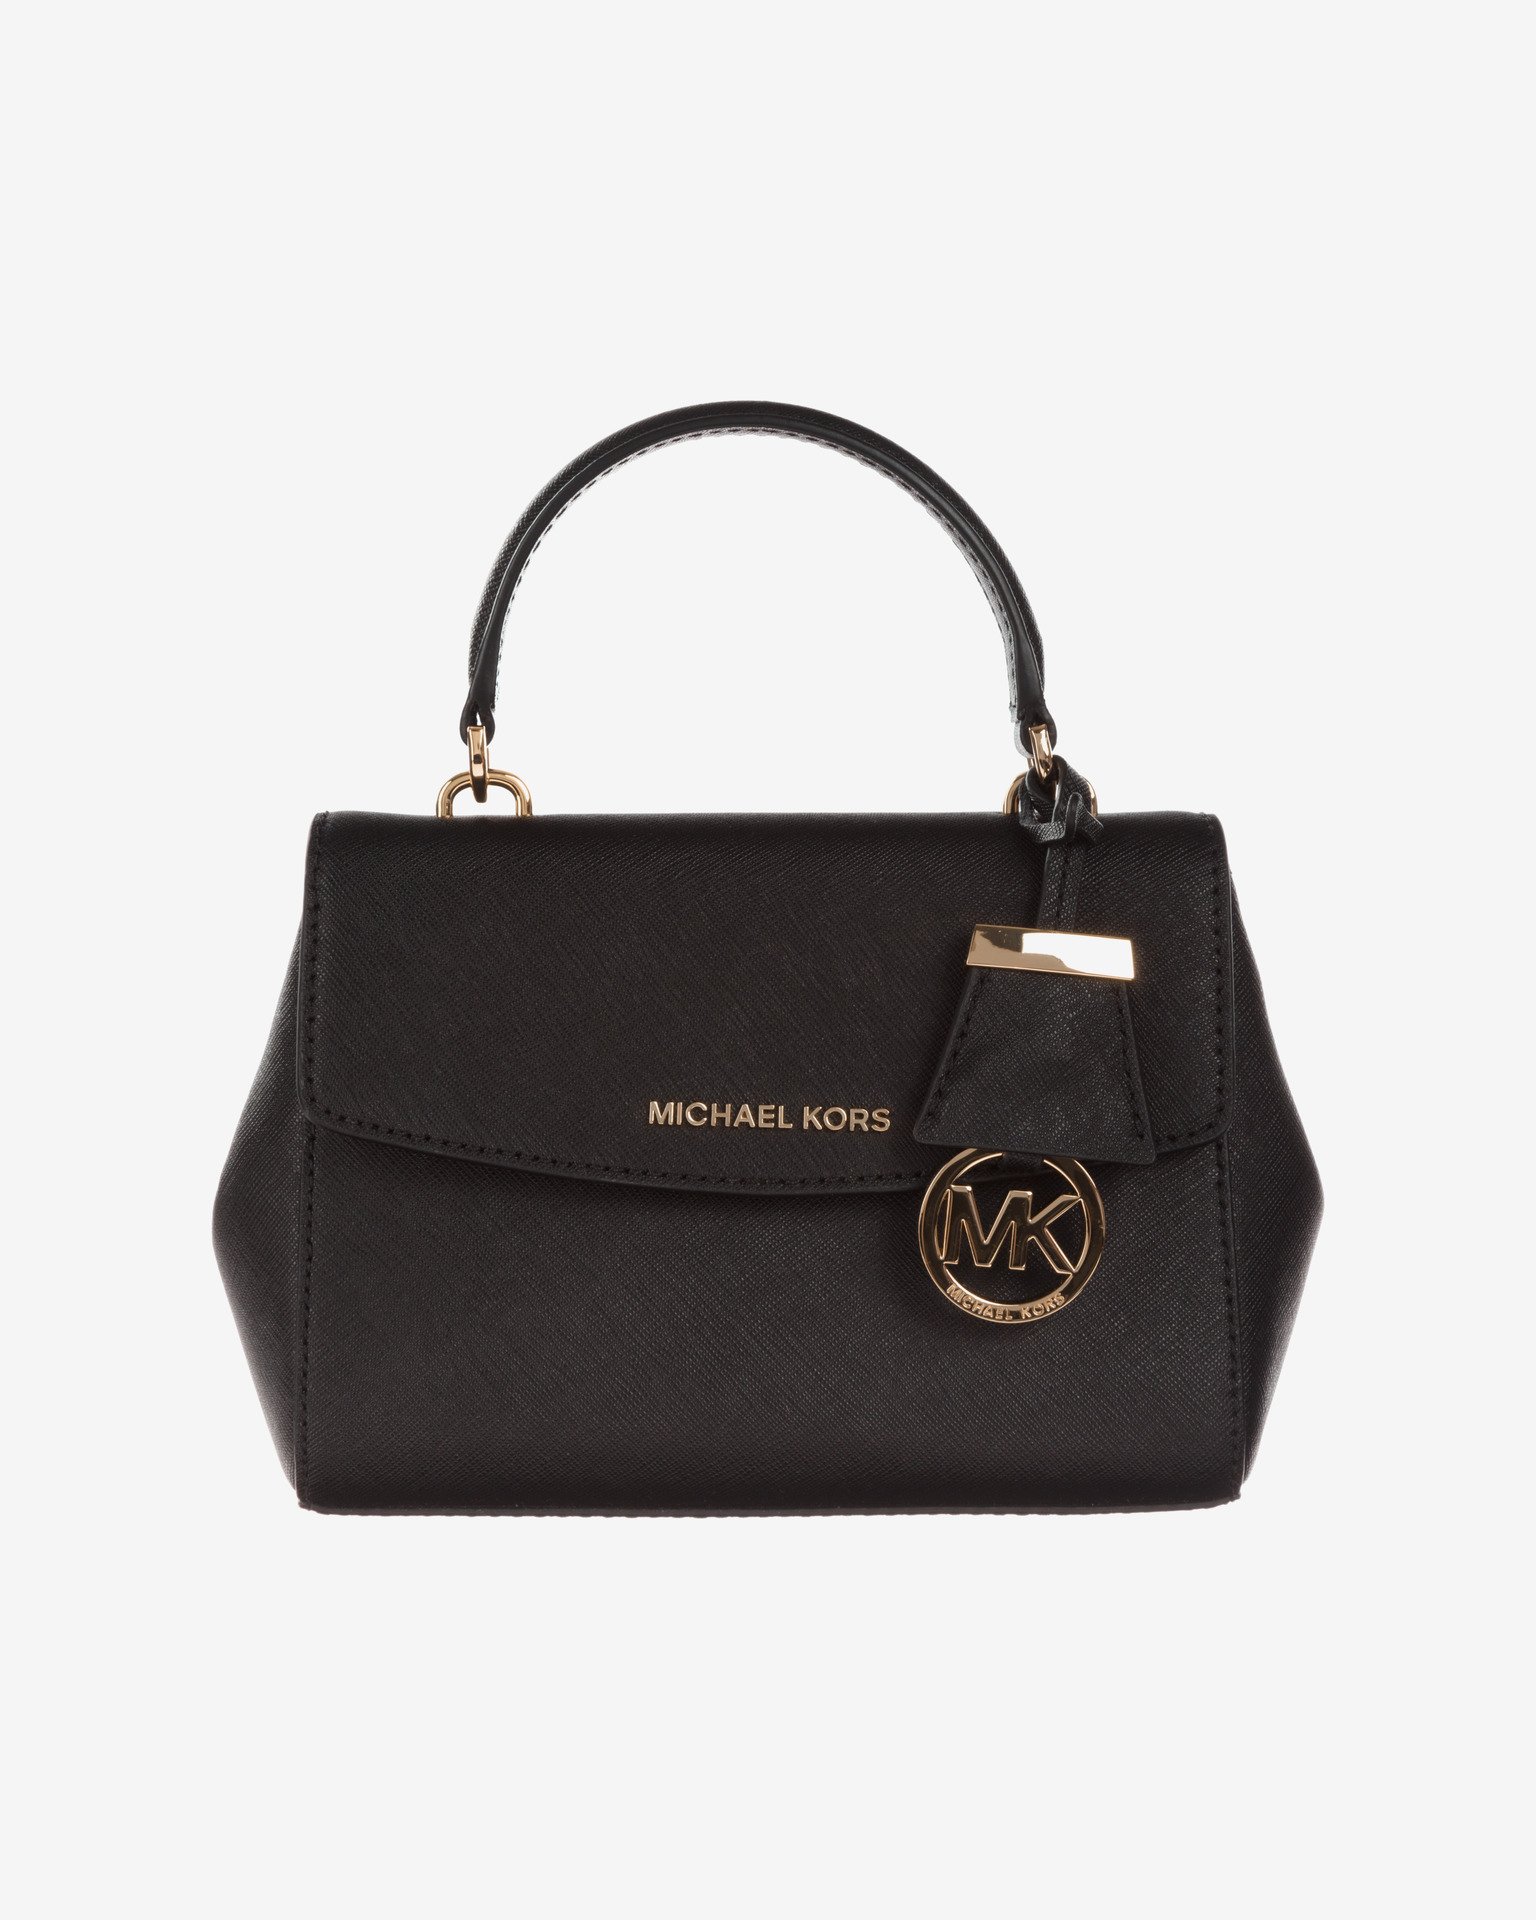 Michael Kors Emilia Brown Small Bucket Bag Luggage Sling Bag  Tinkerlust